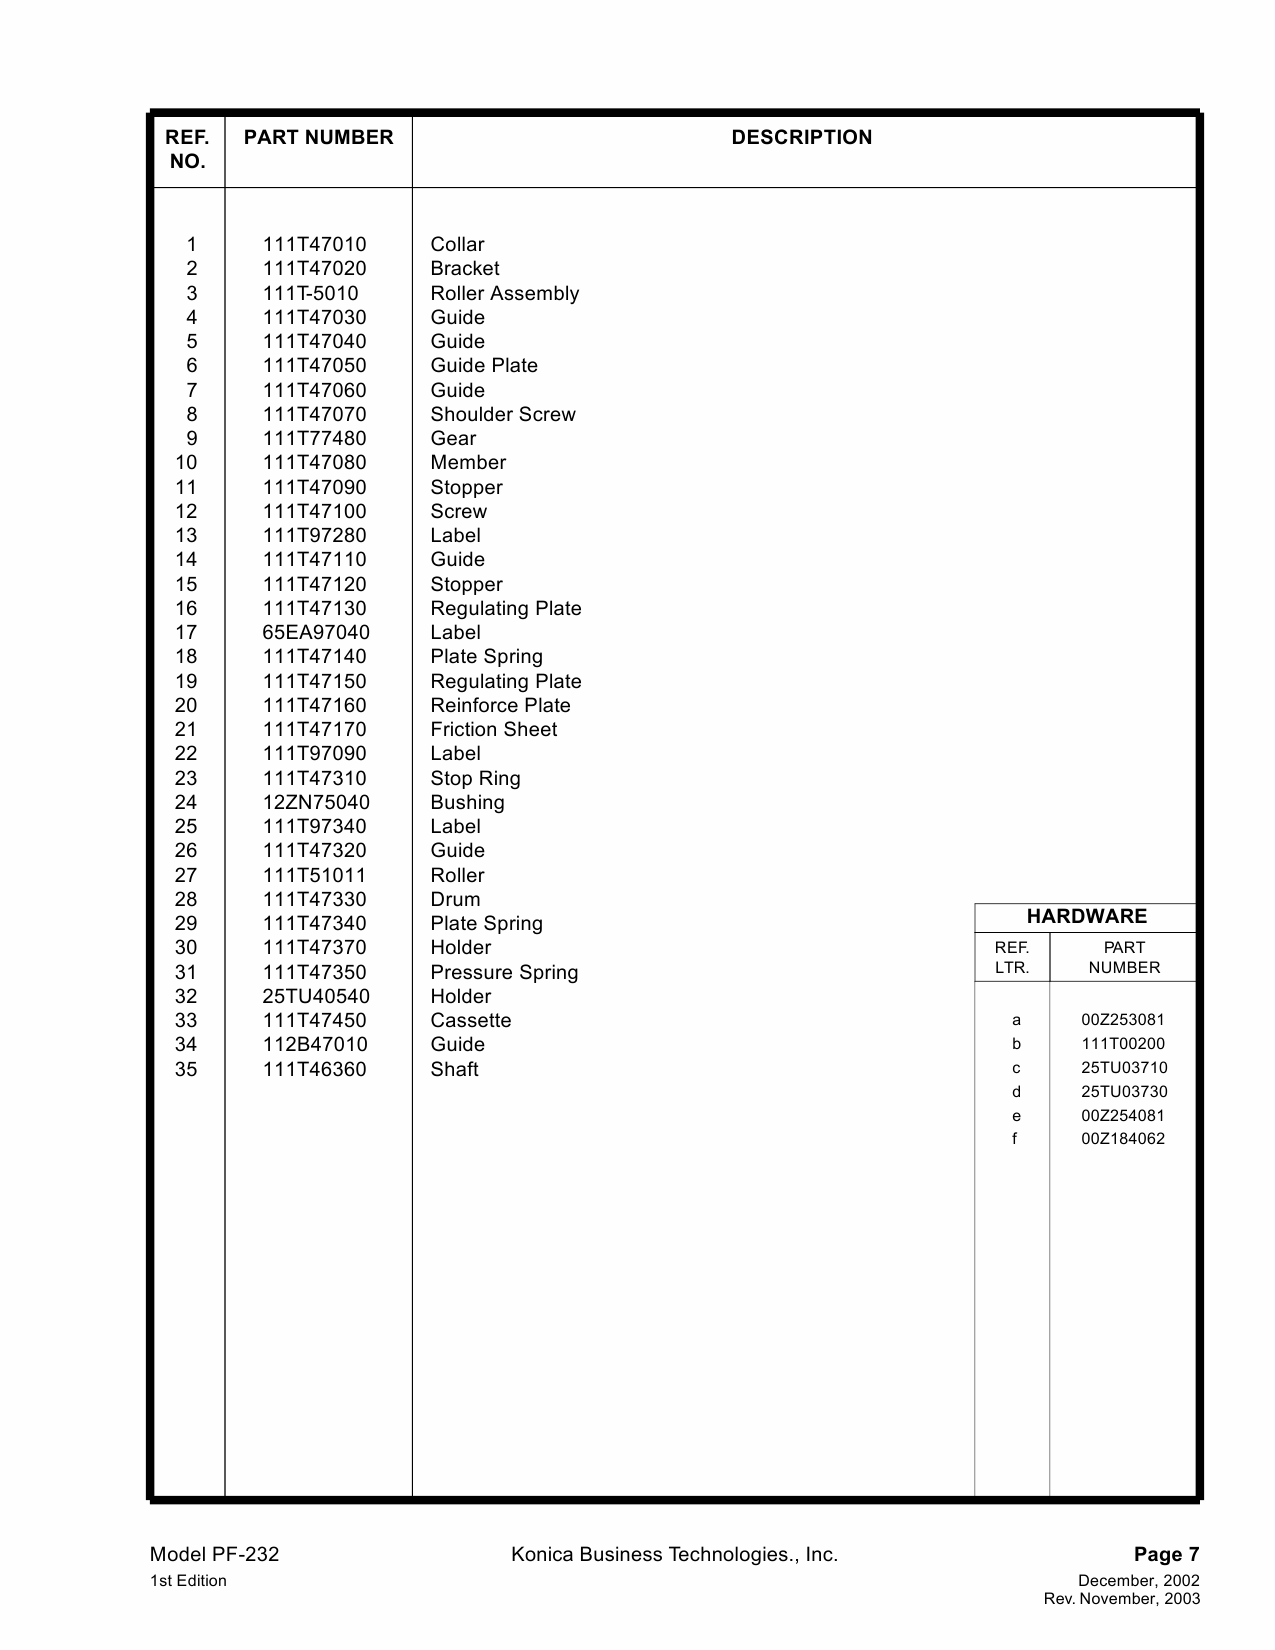 Konica-Minolta Options PF-232 Parts Manual-6